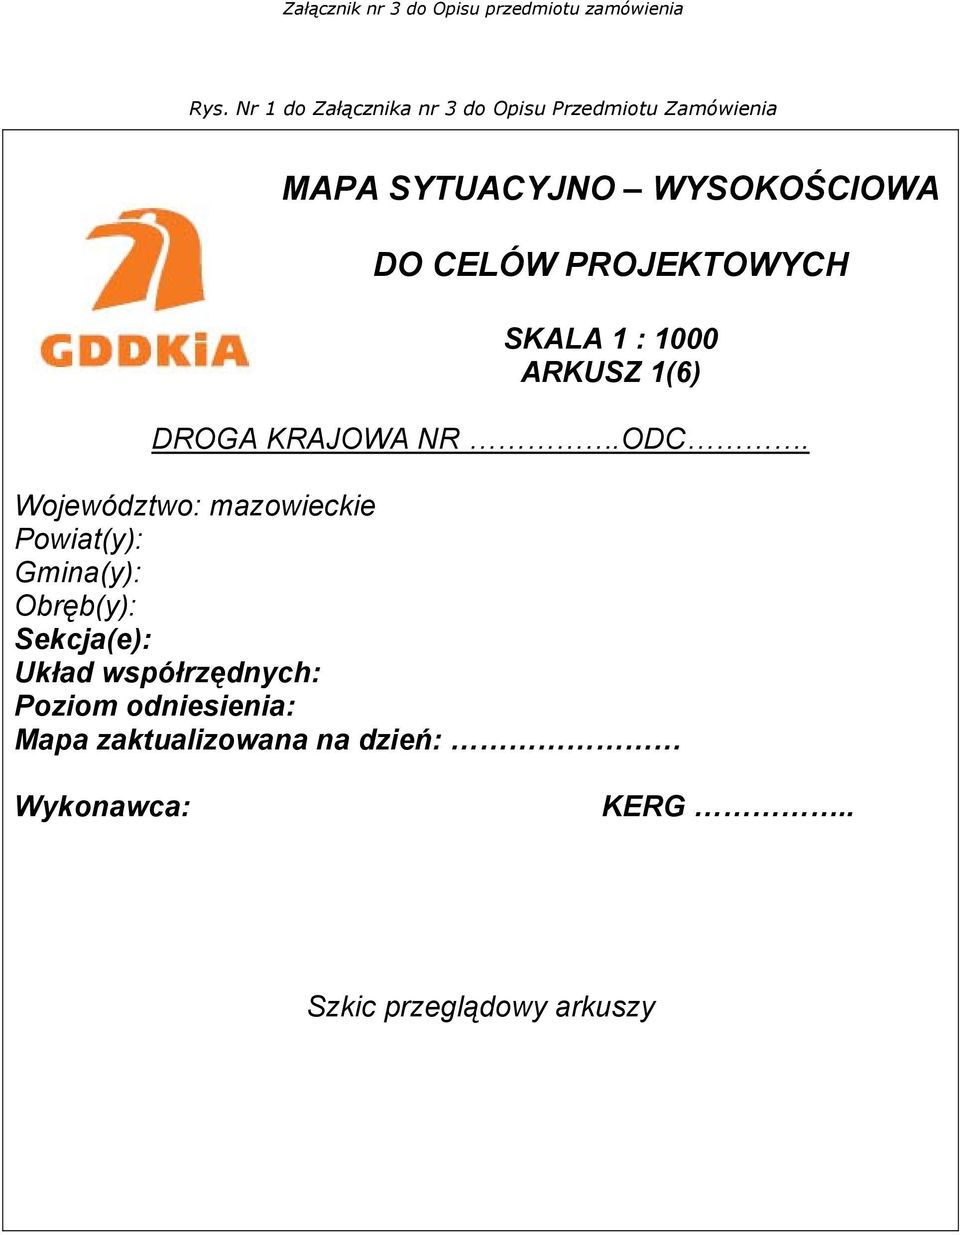 Województwo: mazowieckie Powiat(y): Gmina(y): Obręb(y): Sekcja(e): Układ